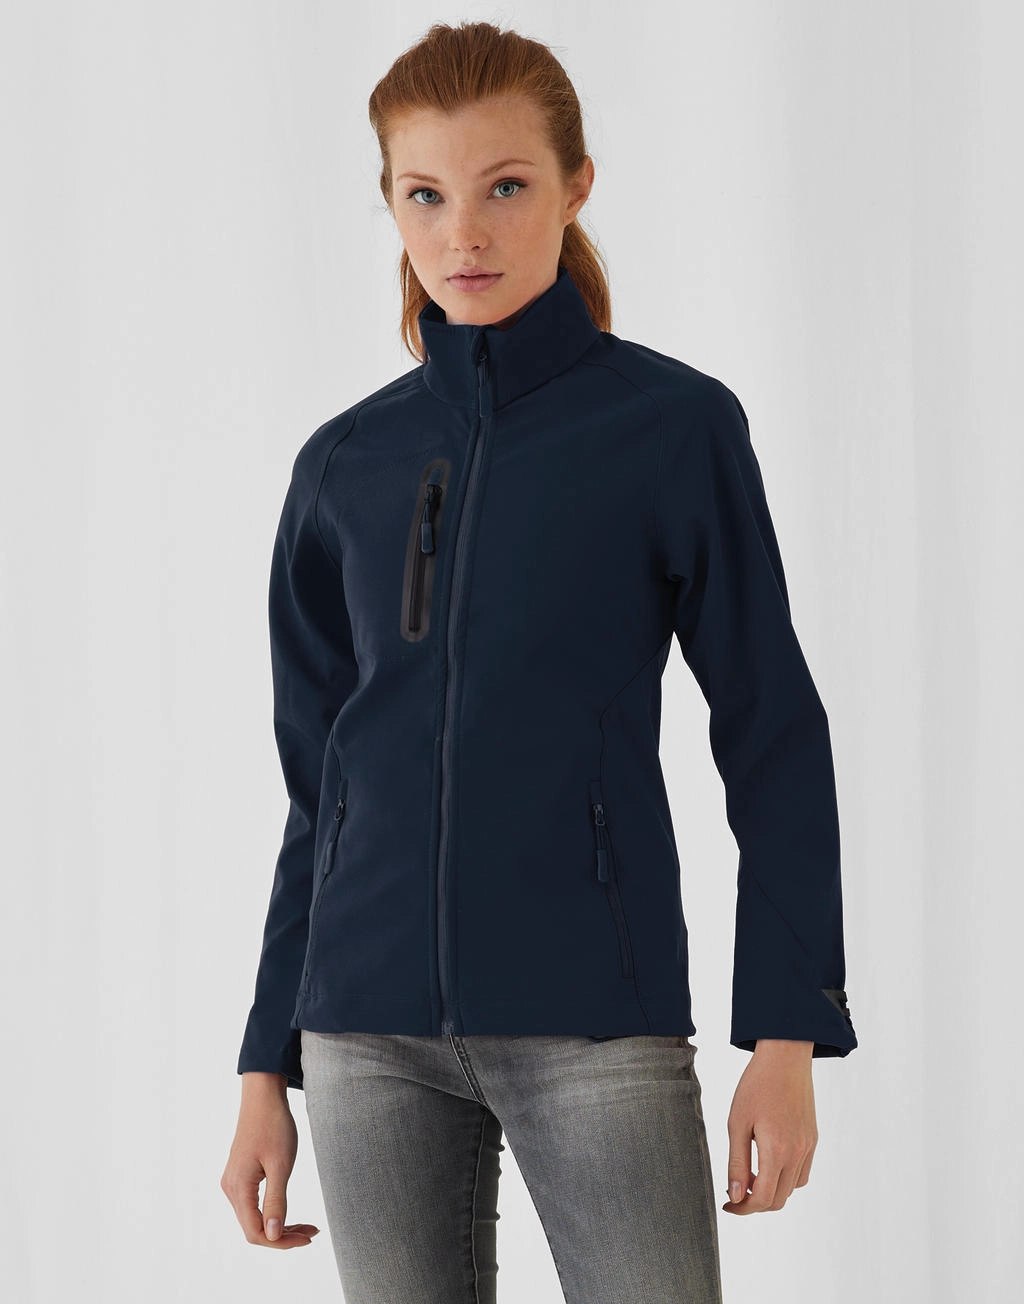 X-Lite Softshell/women Jacket zum Besticken und Bedrucken mit Ihren Logo, Schriftzug oder Motiv.